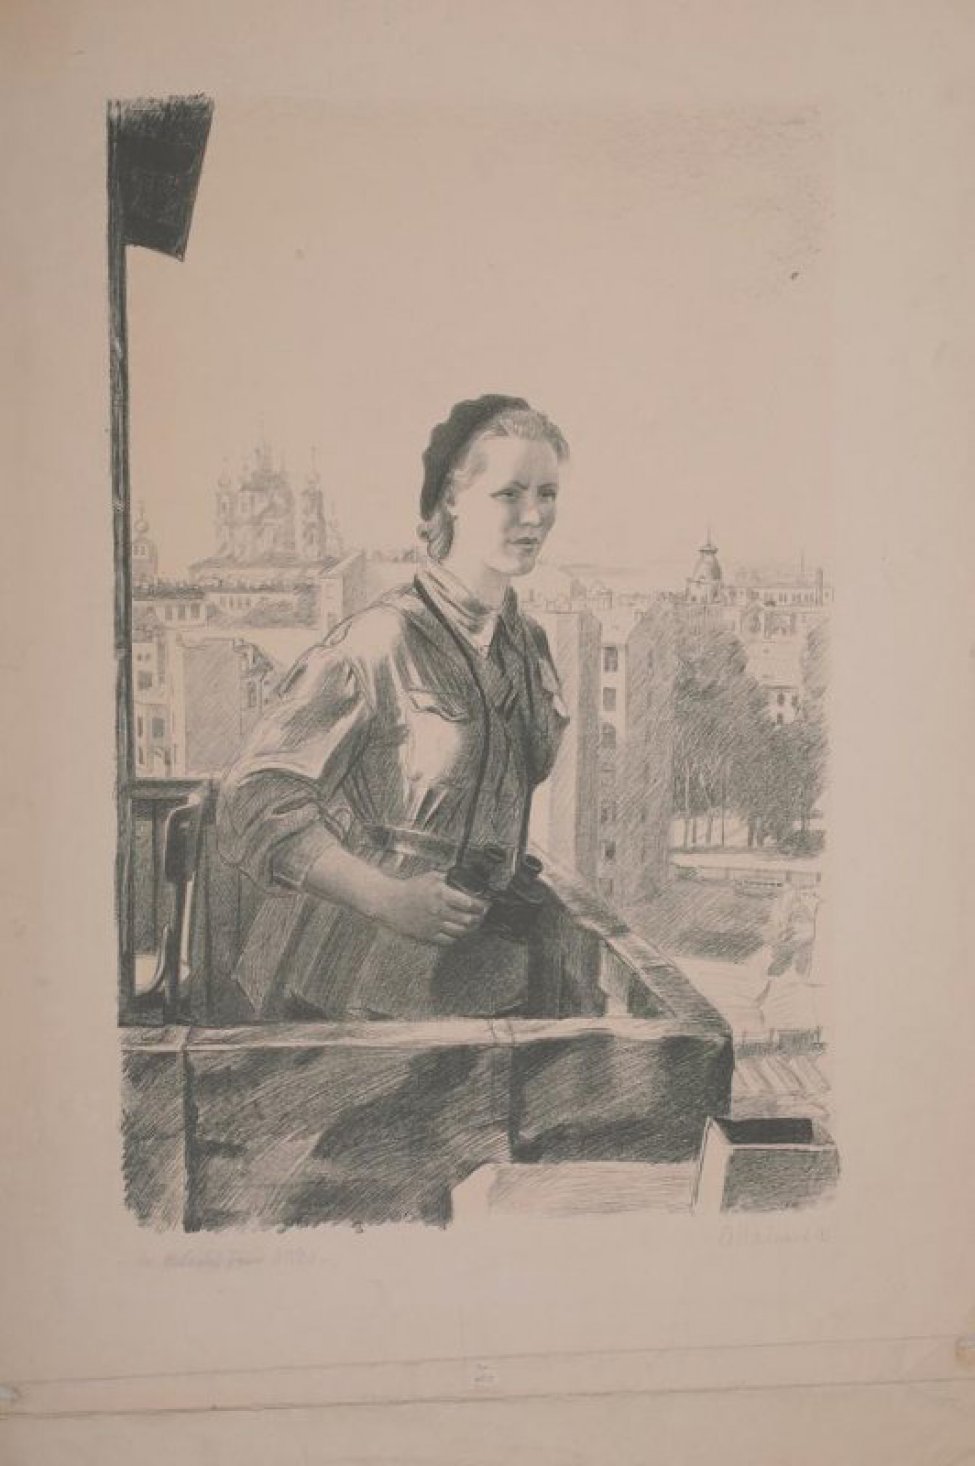 Изображена молодая женщина в гимнастерке и берете сидящая на балконе. На шее  висит бинокль, который она придерживает. Слева вдали- церковь. Справа деревья и многоэтажные дома.